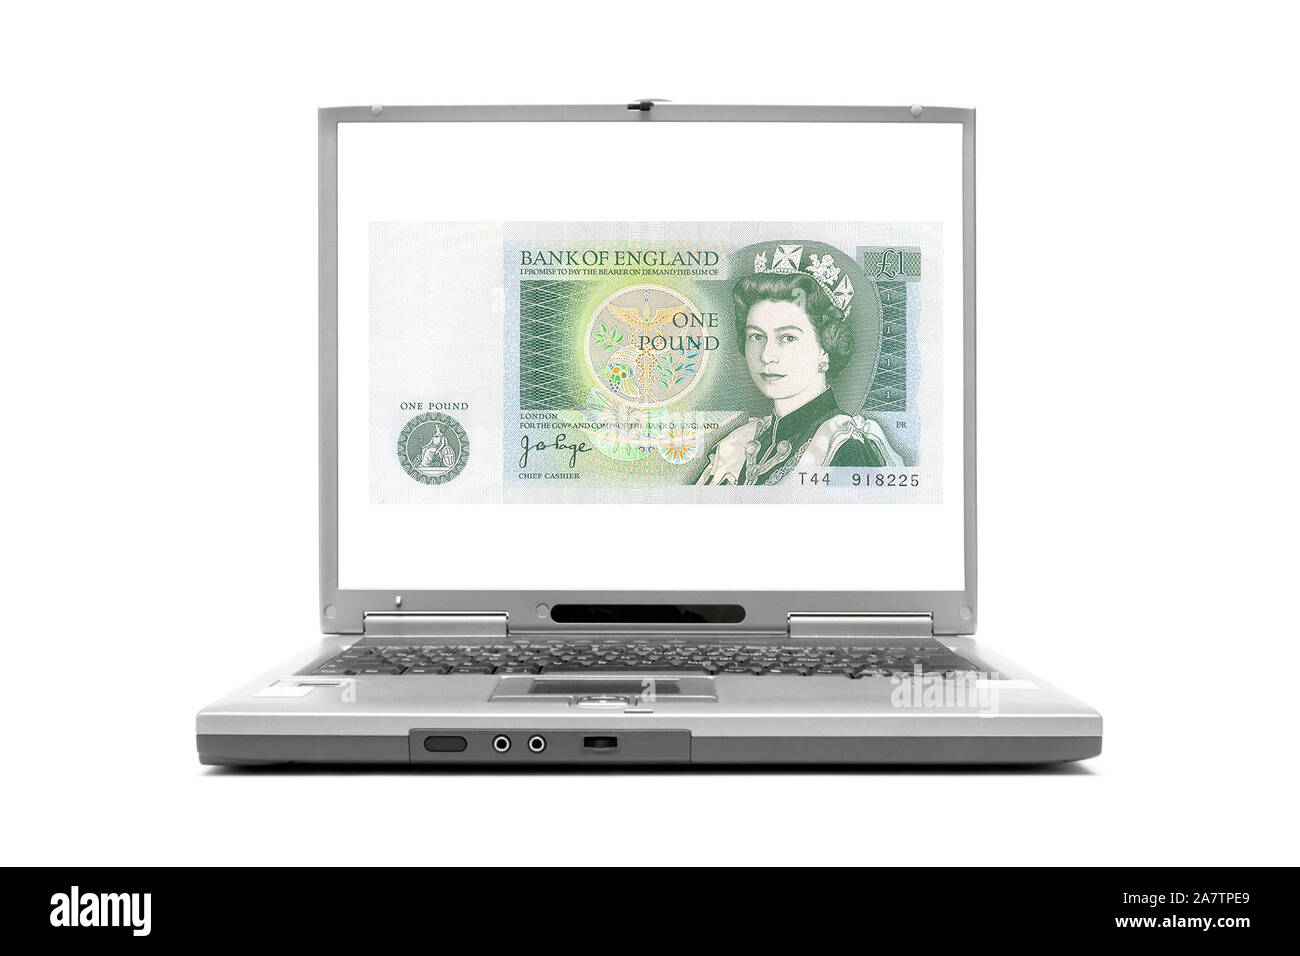 Laptop zeigt eine 10 Pfund Note, GBP, England, Grossbritannien, Geldschein, Banknote, Stock Photo